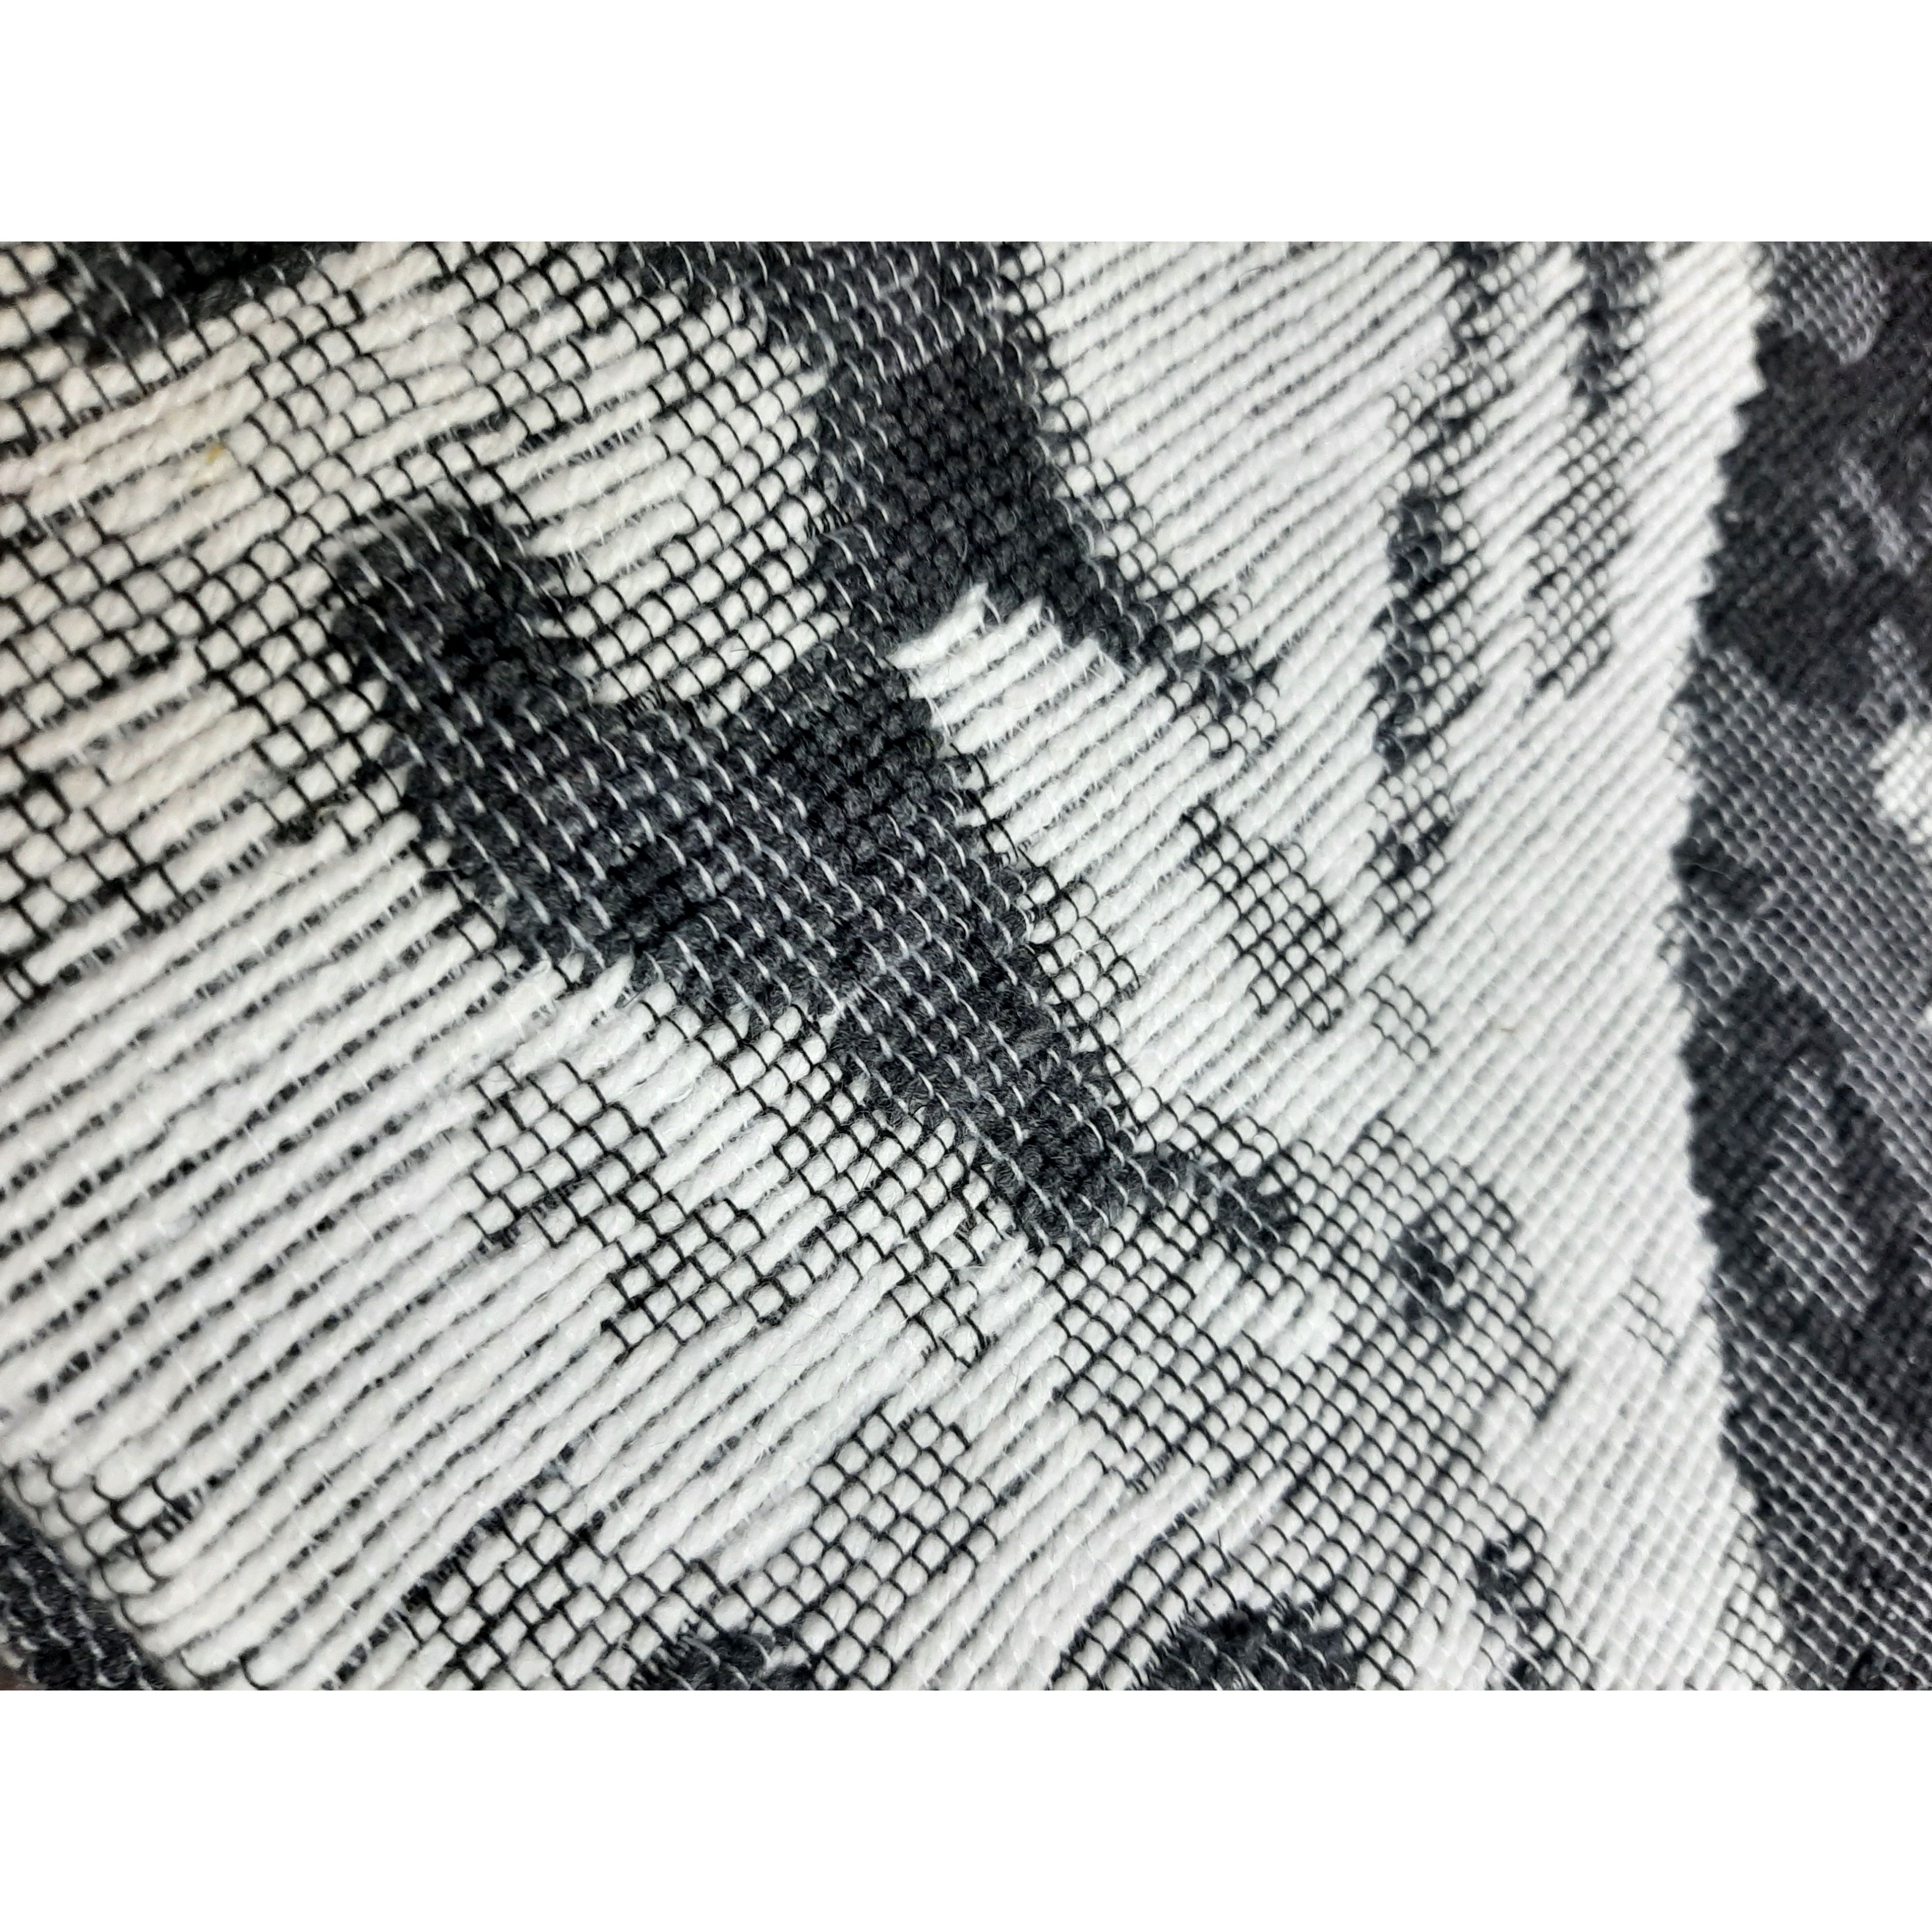 Ковер универсальный Izzihome Siesta 1797, 160х230 см черный/белый (201SA17973639) - фото 3